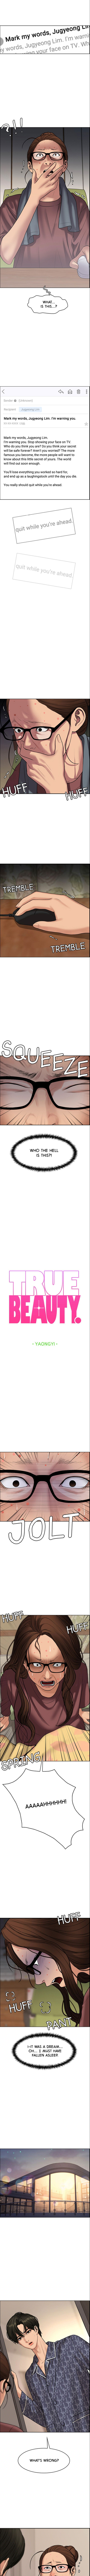 true_beauty_215_1